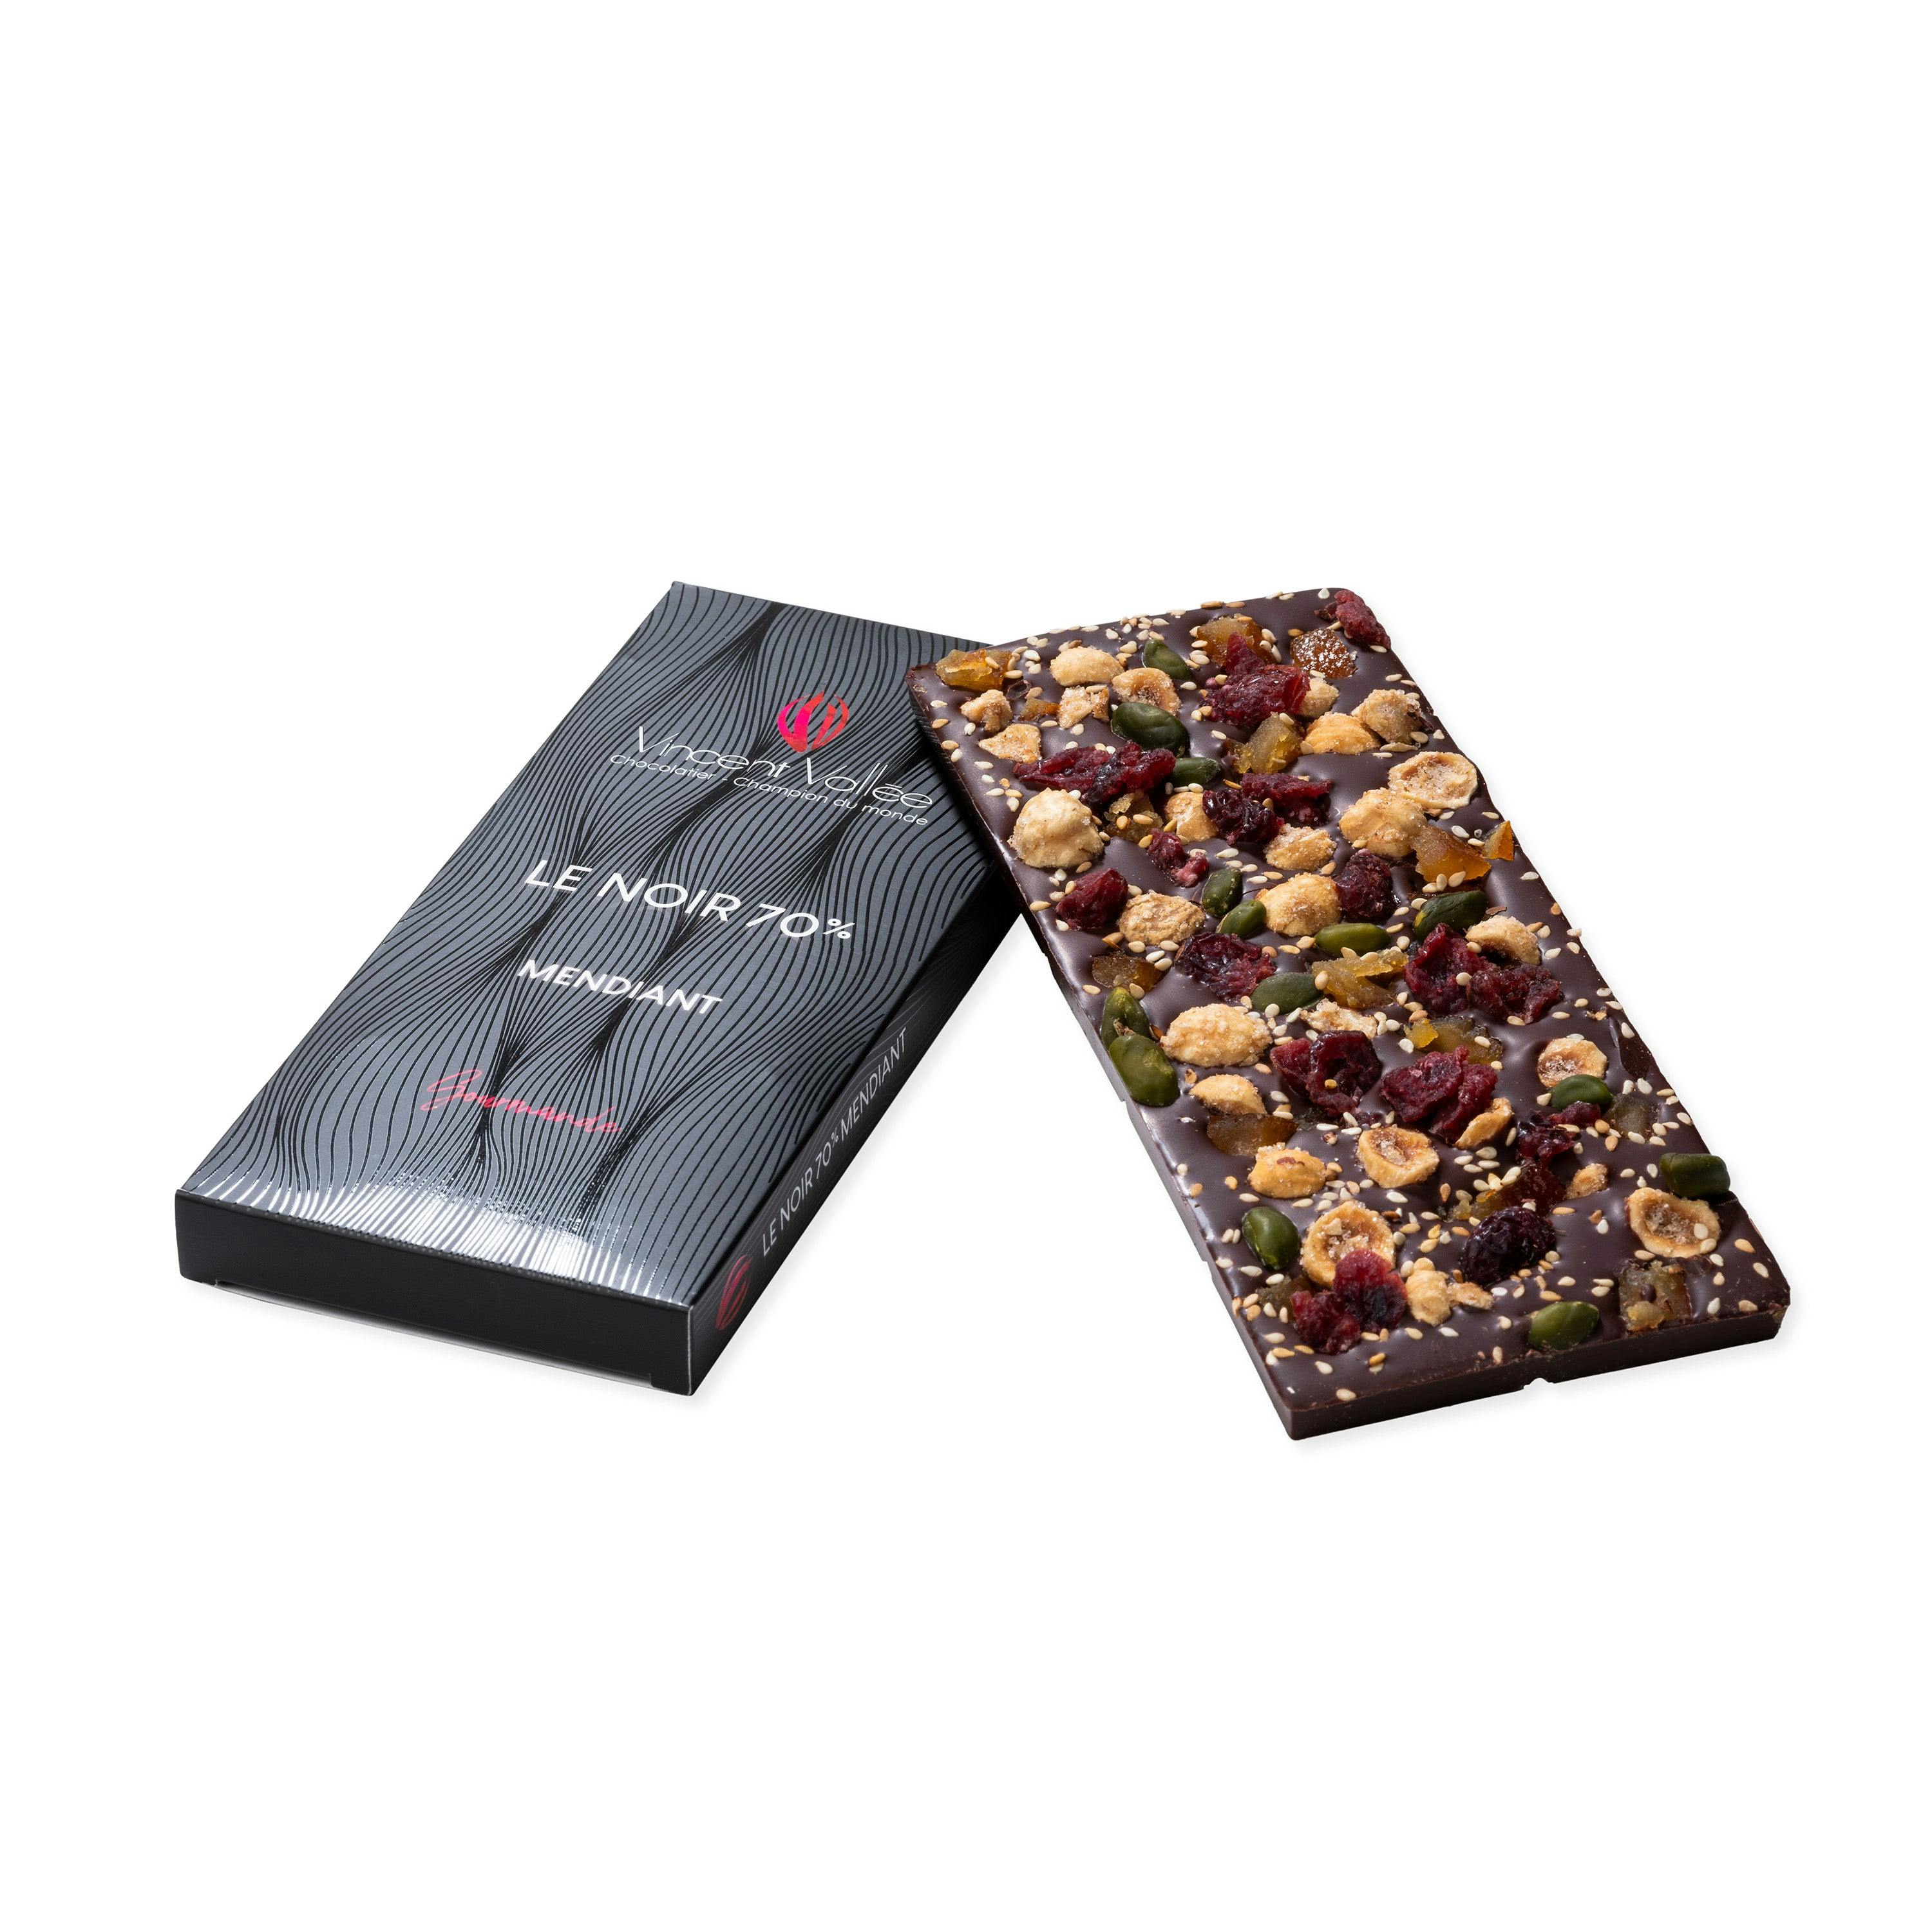 Tablettes - Vincent Vallée world champion chocolatier